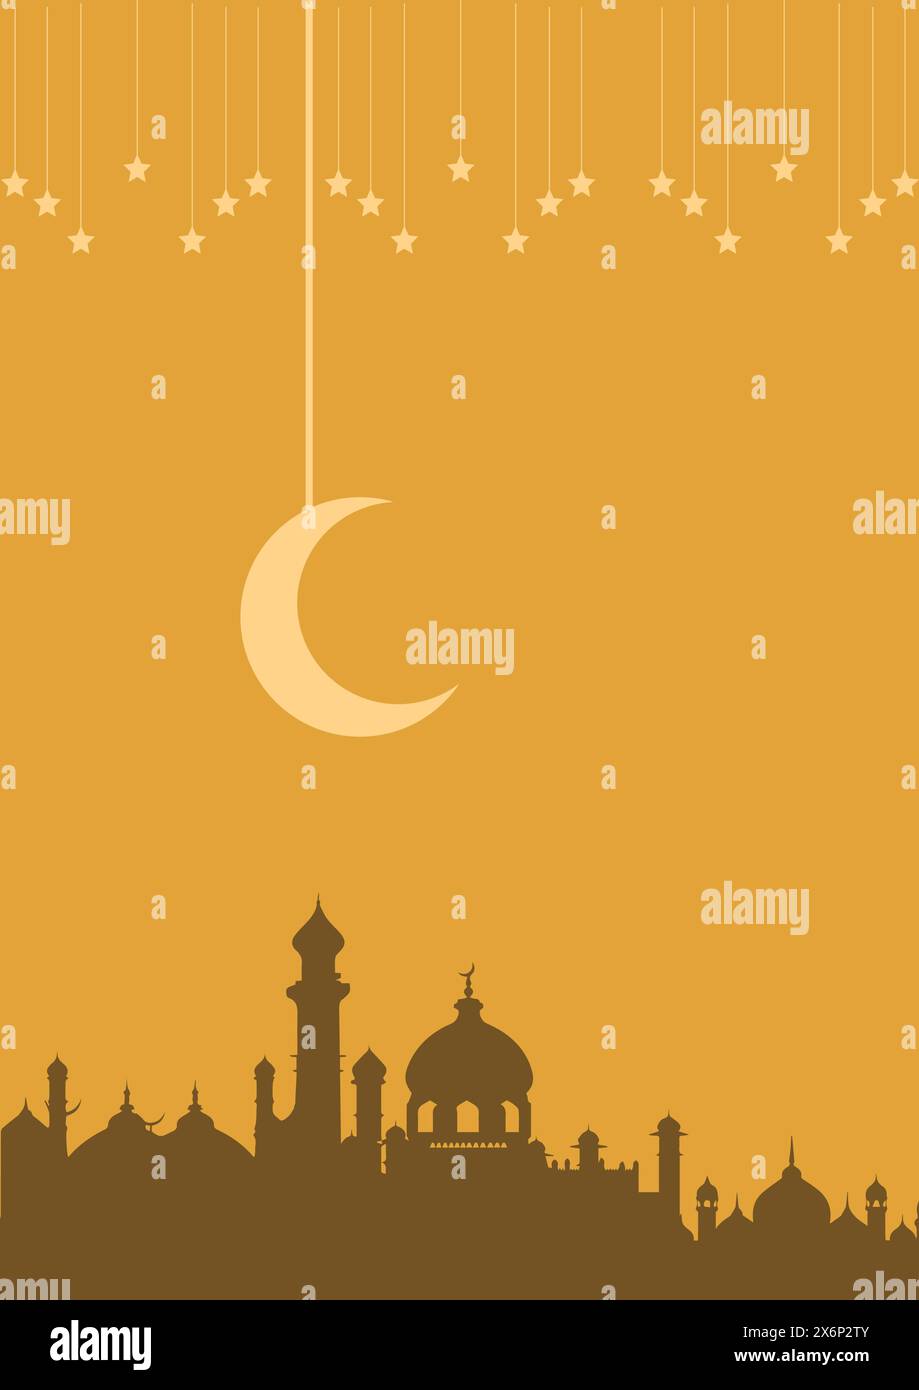 Anmutige Poster-Illustrationen mit islamischem Thema: Künstlerische Designs mit kultureller Eleganz für moderne Einrichtung Stock Vektor